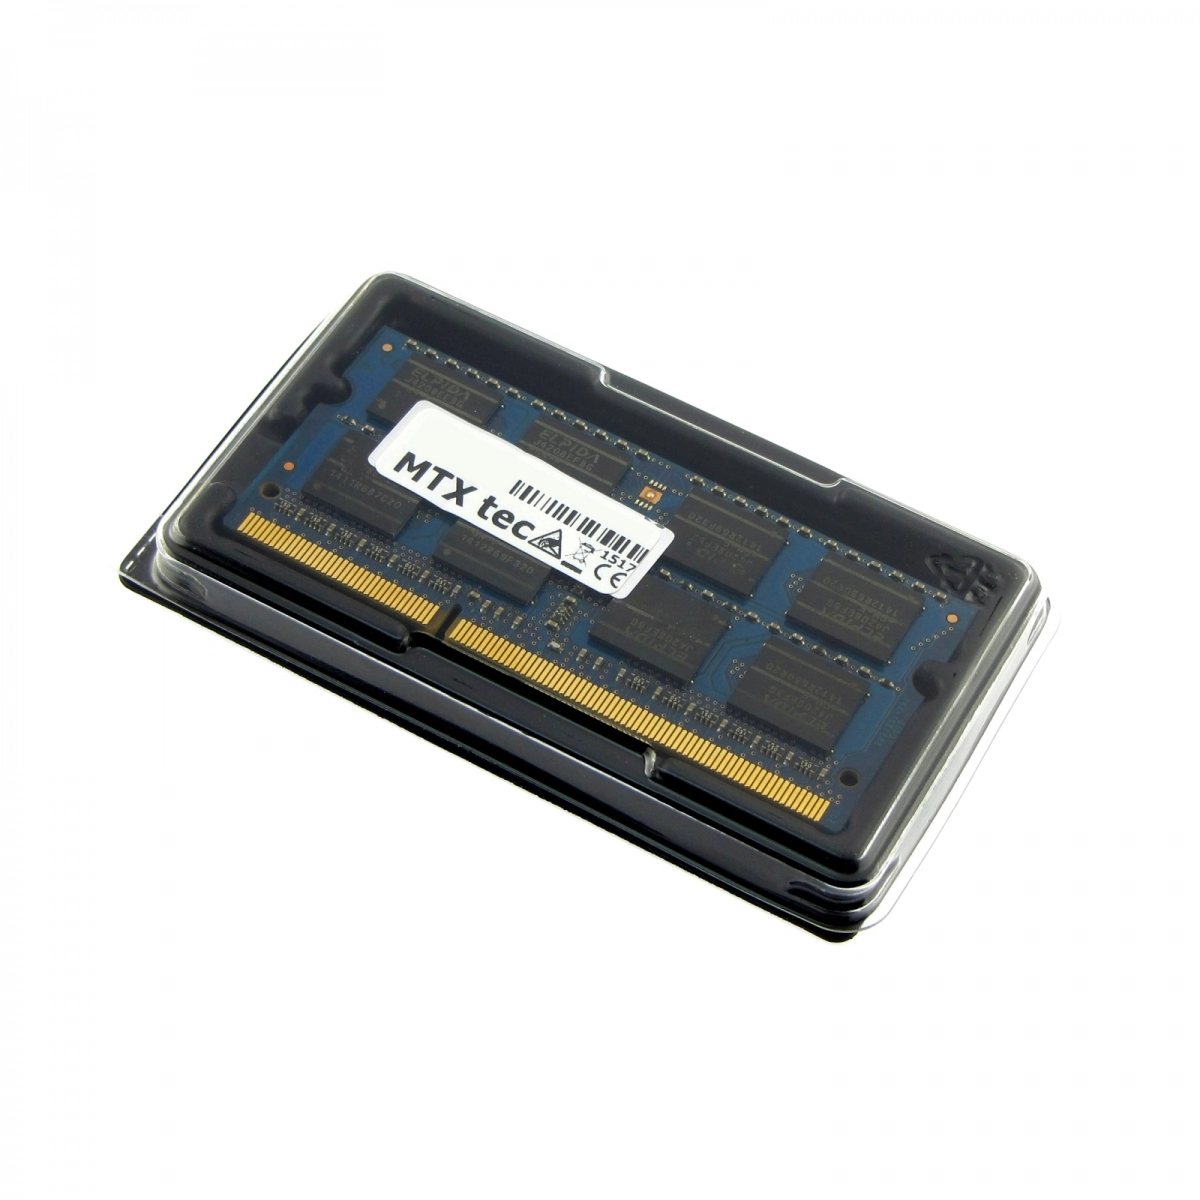 MTXtec Arbeitsspeicher 8 GB RAM für LENOVO Z50-70